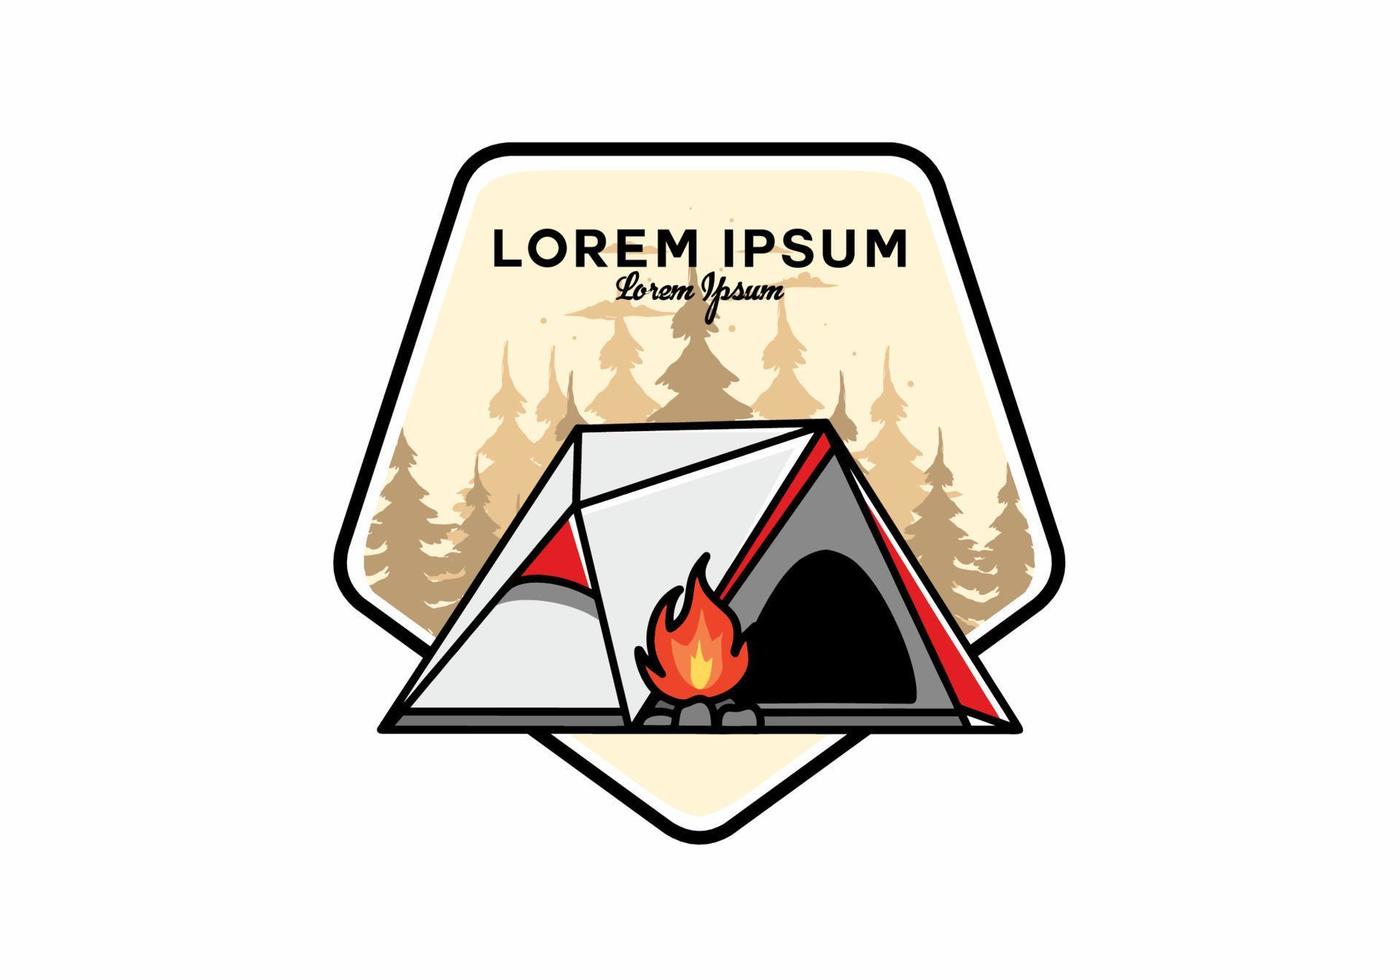 driehoek camping tent en vreugdevuur illustratie ontwerp vector